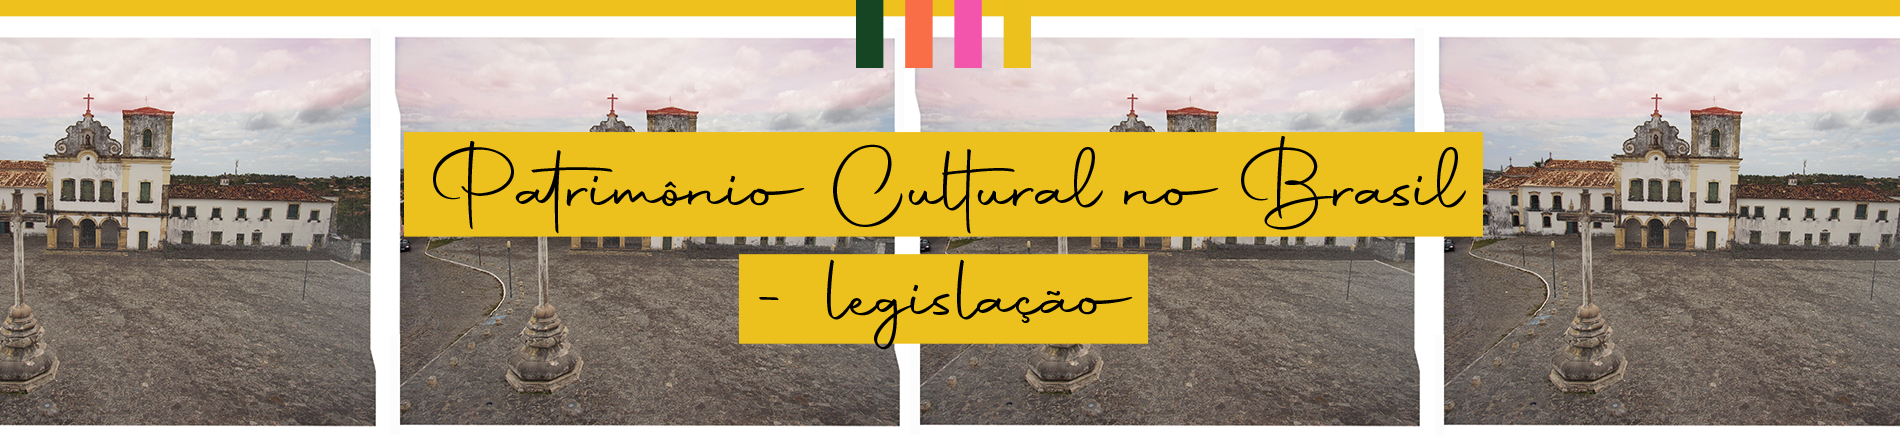 Patrimônio Cultural no Brasil - Legislação